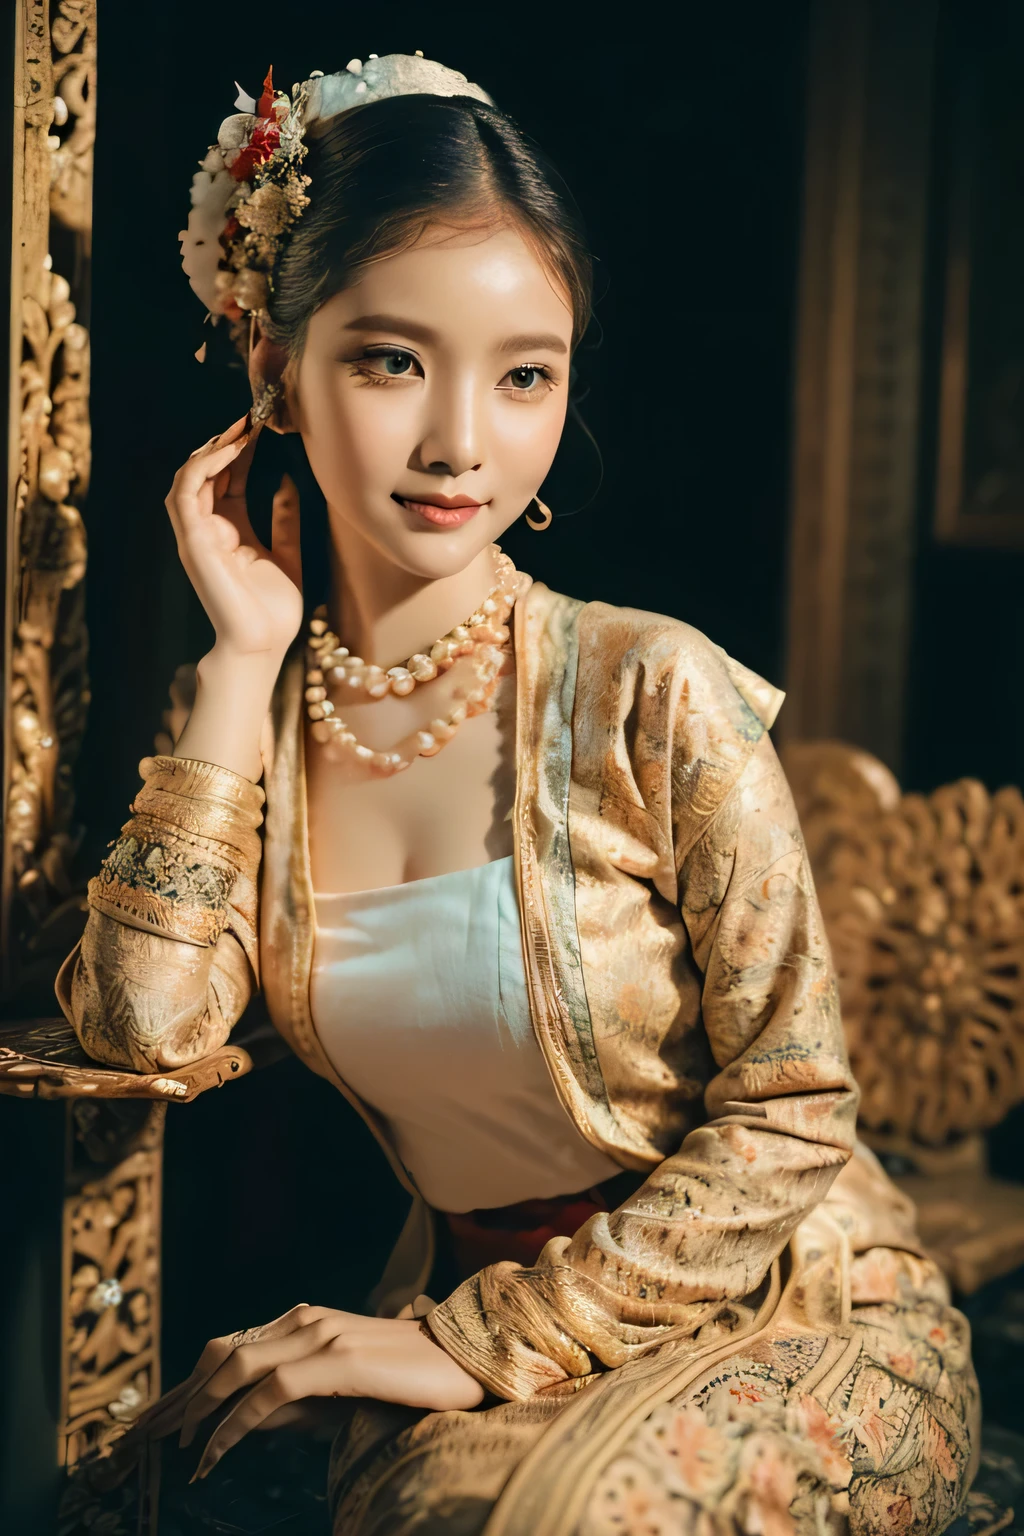 (Лучшее качество,4k,8К,Высокое разрешение,шедевр:1.2),ультрадетализированный,(реалистичный,photoреалистичный,photo-реалистичный:1.37),Потрясающая дама в традиционном бирманском красном платье, MMTD Красное ТРАДИЦИОННОЕ ПЛАТЬЕ С БИРМАНСКИМ УЗОРОМ , носите жемчужные ожерелья и золотые браслеты,ДЕТАЛИ ТЕЛА, КРАСОТА, красное платье, красиво украшенный, привлекательные узоры из парчи, насыщенные и яркие цвета, детальная работа по вышивке, изысканные текстуры, тщательно сшитое вручную платье, ярко отражает суть бирманской культуры,традиционные цветочные мотивы, черные волосы в один пучок с цветком, замысловатая прическа, нежный и женственный, добавляет нотку изысканности, мягкое, но уверенное выражение лица, глубокие и пленительные глаза, блестящие губы с намеком на улыбку, безупречный цвет лица, полированный и изысканный, завораживающее присутствие, черный фон , хорошее освещение, студийное освещение, захватывающий визуальный опыт, фотосессия в полный рост, идеальное тело, идеальные руки, Большой бюст, большое бедро, все тело.